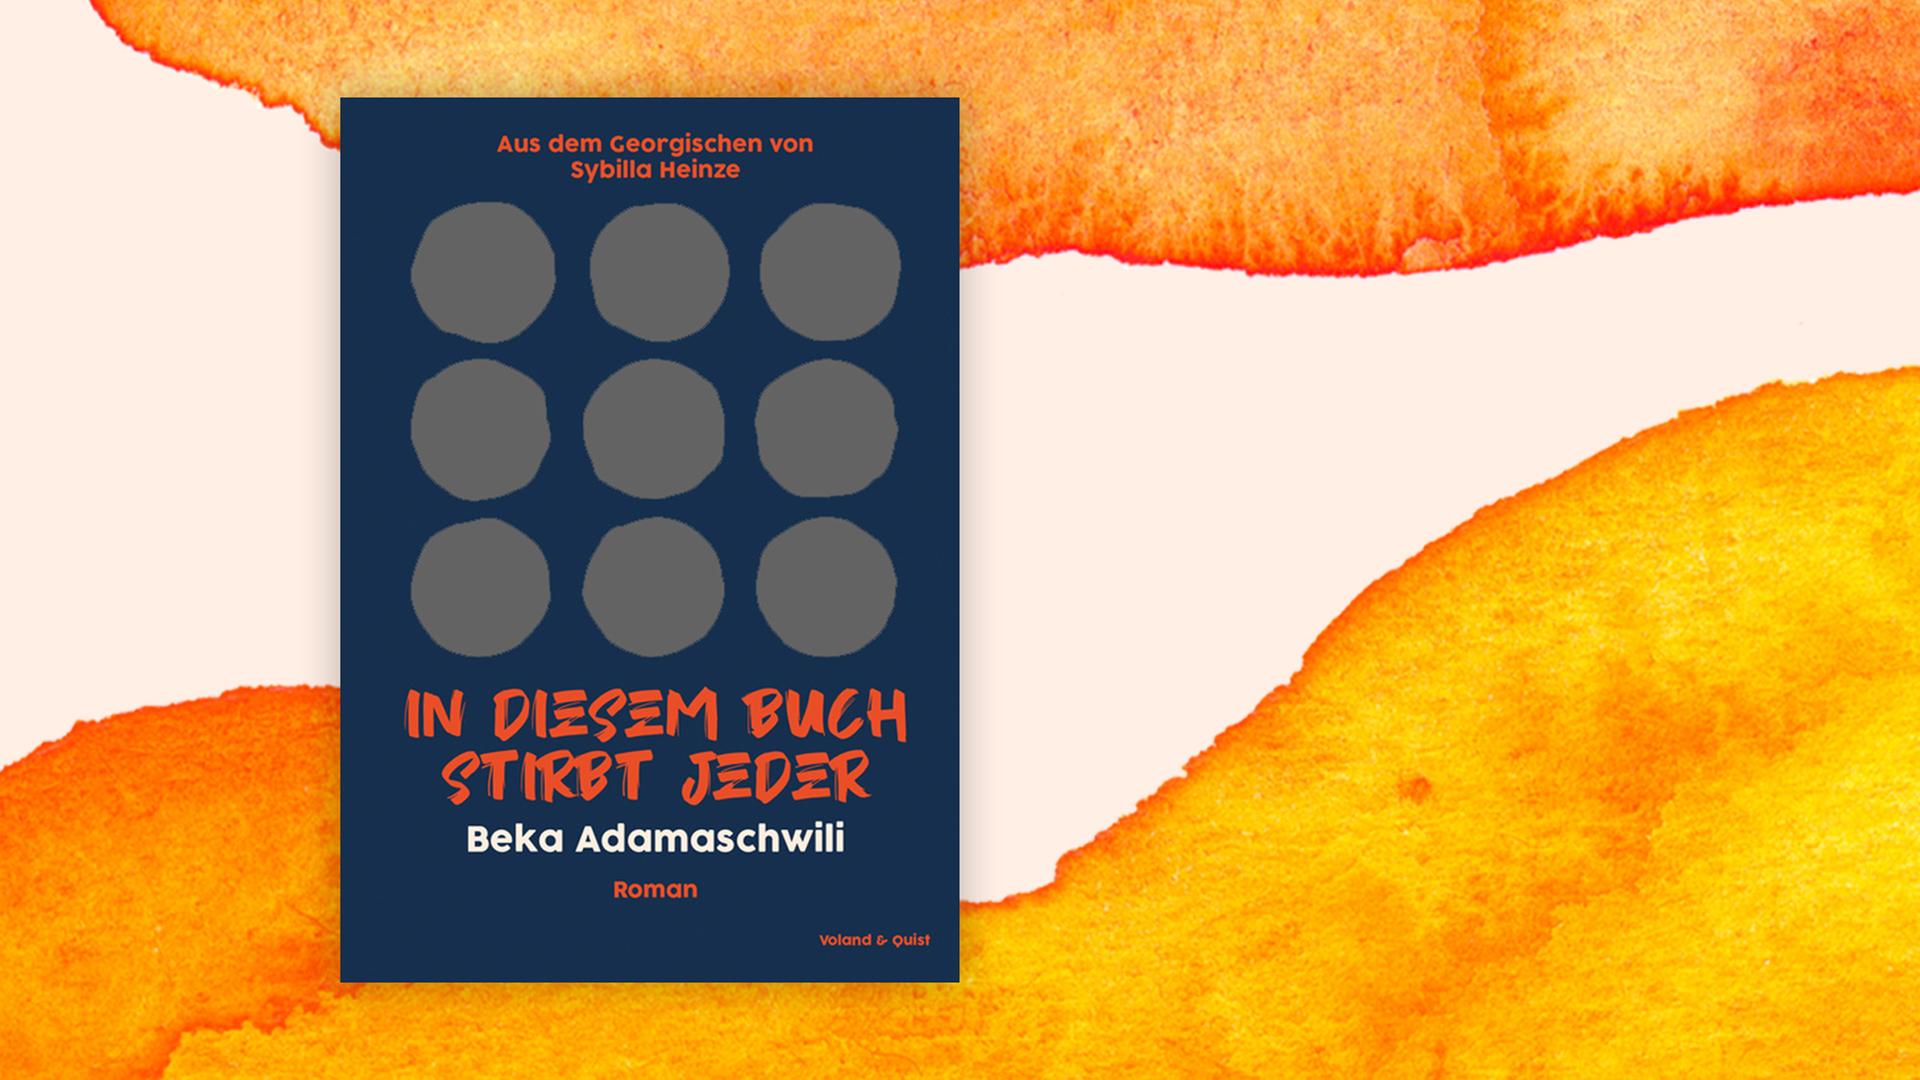 Buchcover zu Beka Adamaschwili: "In diesem Buch stirbt jeder"